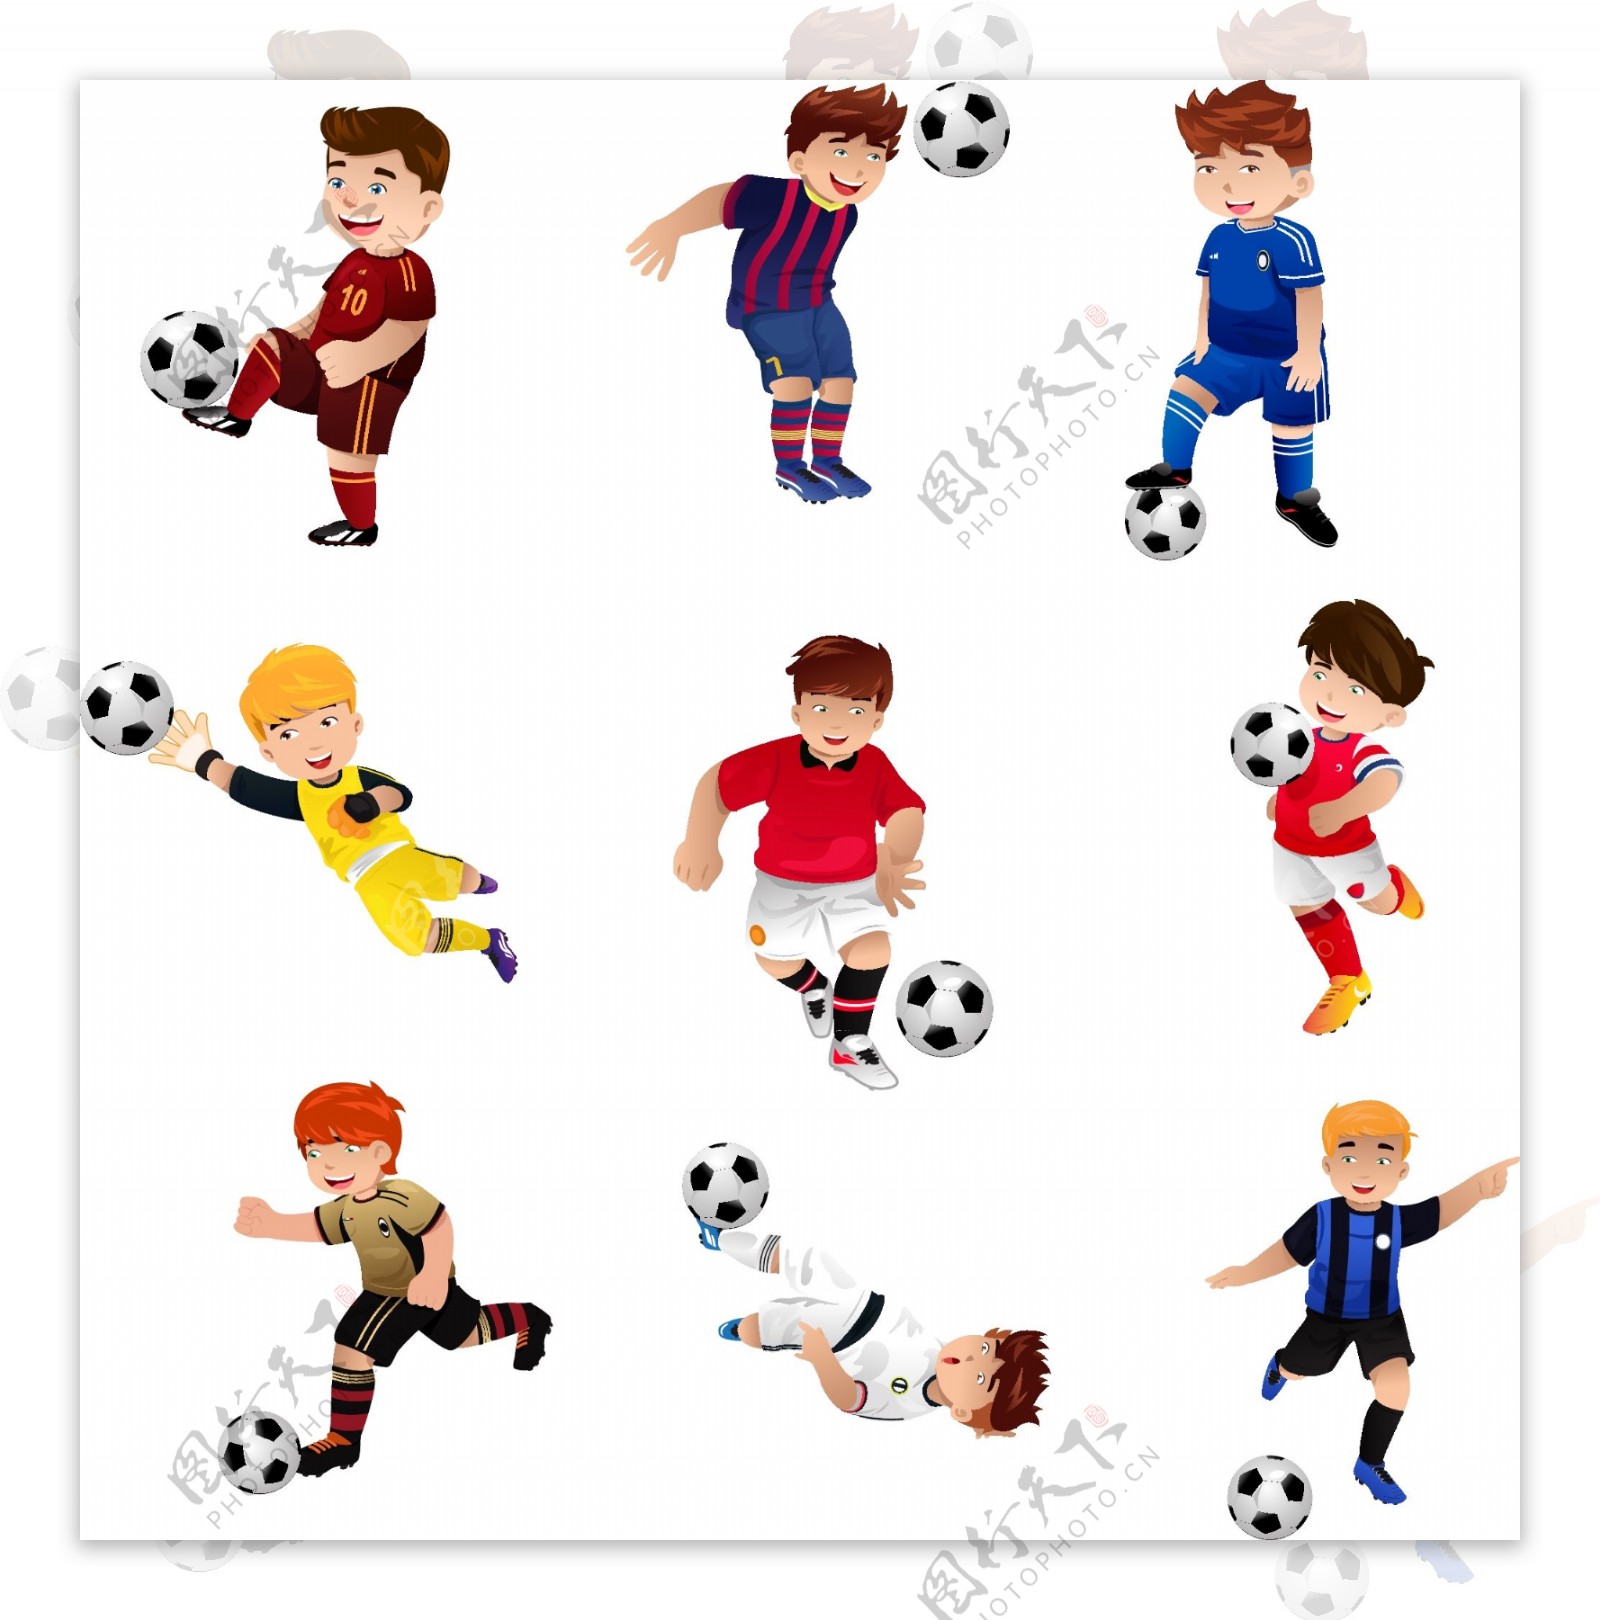 踢球的卡通儿童图片